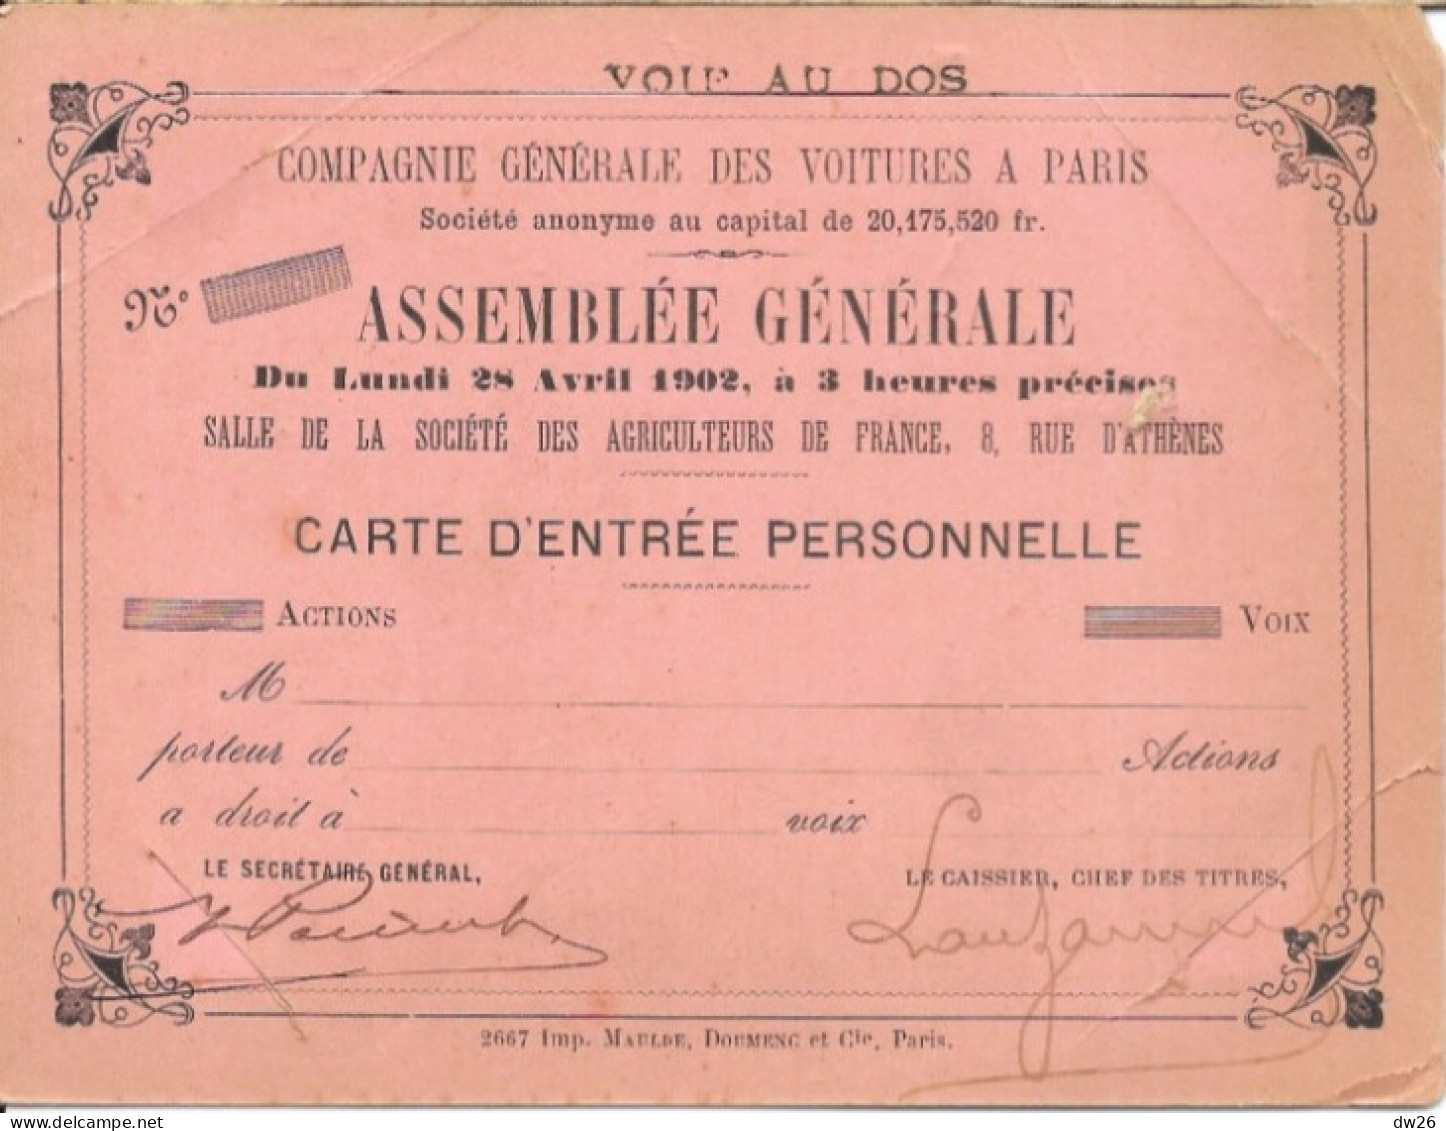 Compagnie Générale Des Voitures à Paris - Carte D'Entrée Pour L'Assemblée Générale 28 Avril 1902 - Coches